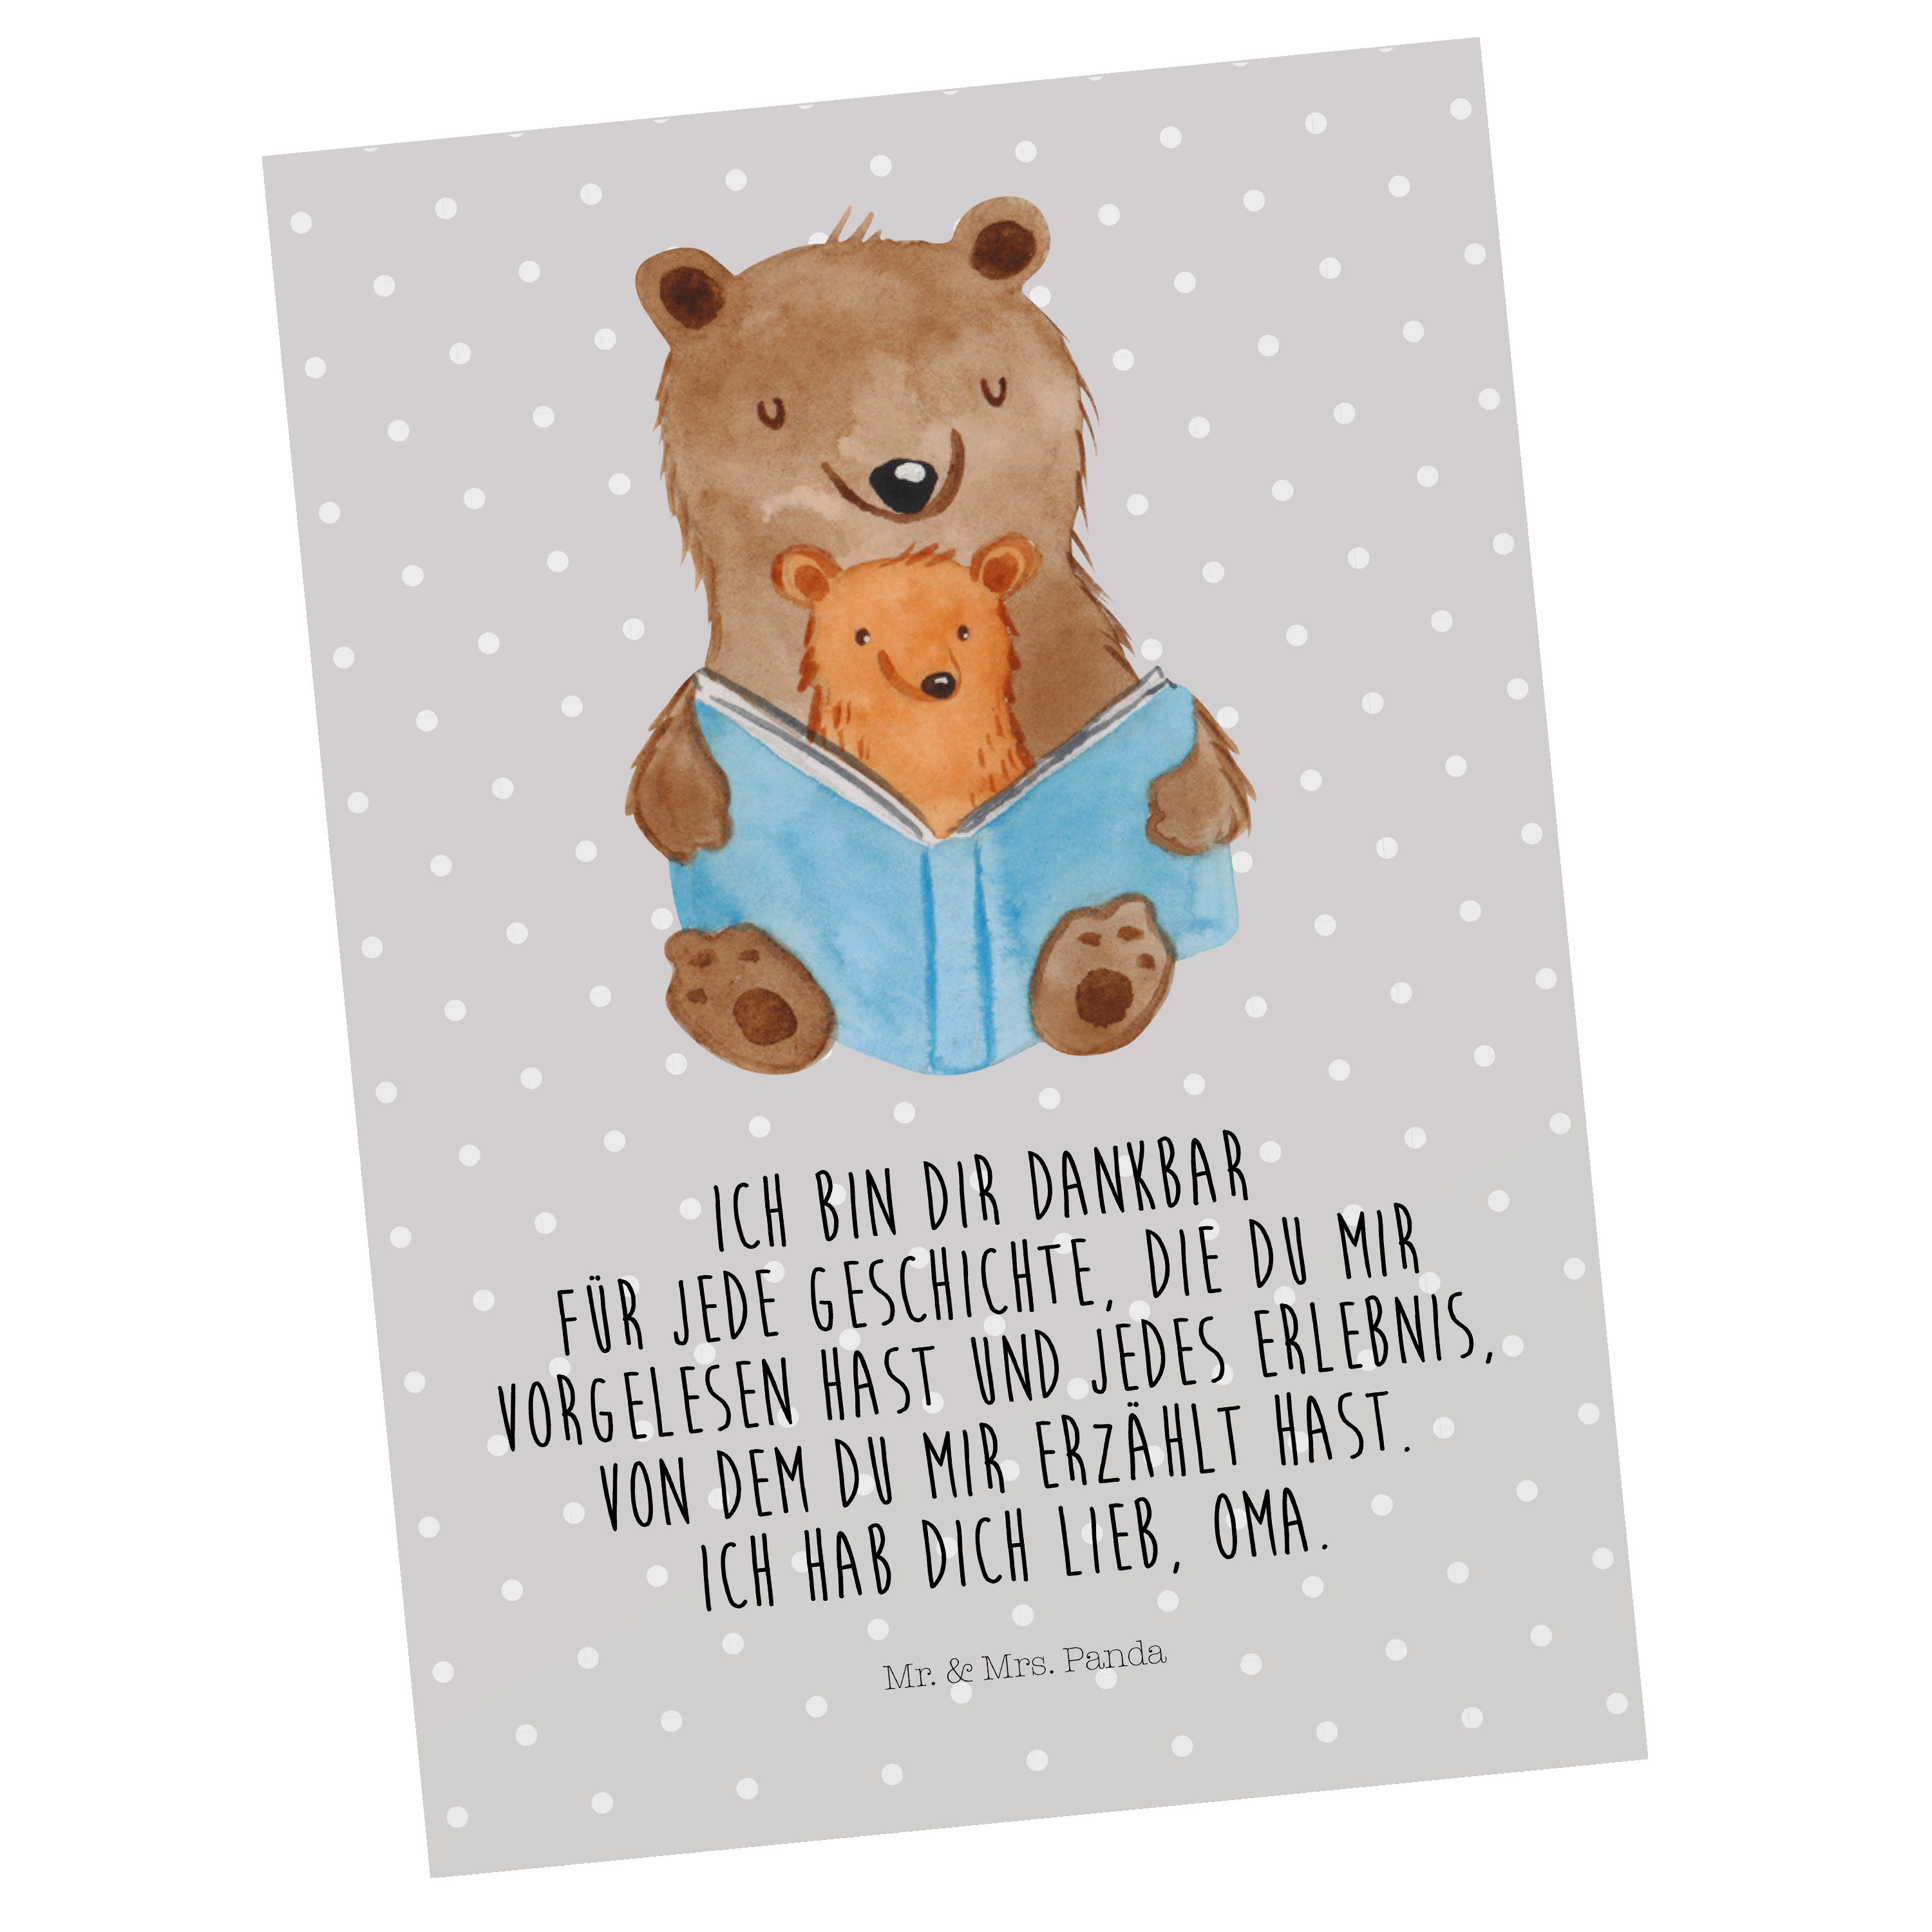 Mr. & Mrs. Panda Postkarte Bären Buch - Grau Pastell - Geschenk, Bruder, Papa, Oma, Großmutter